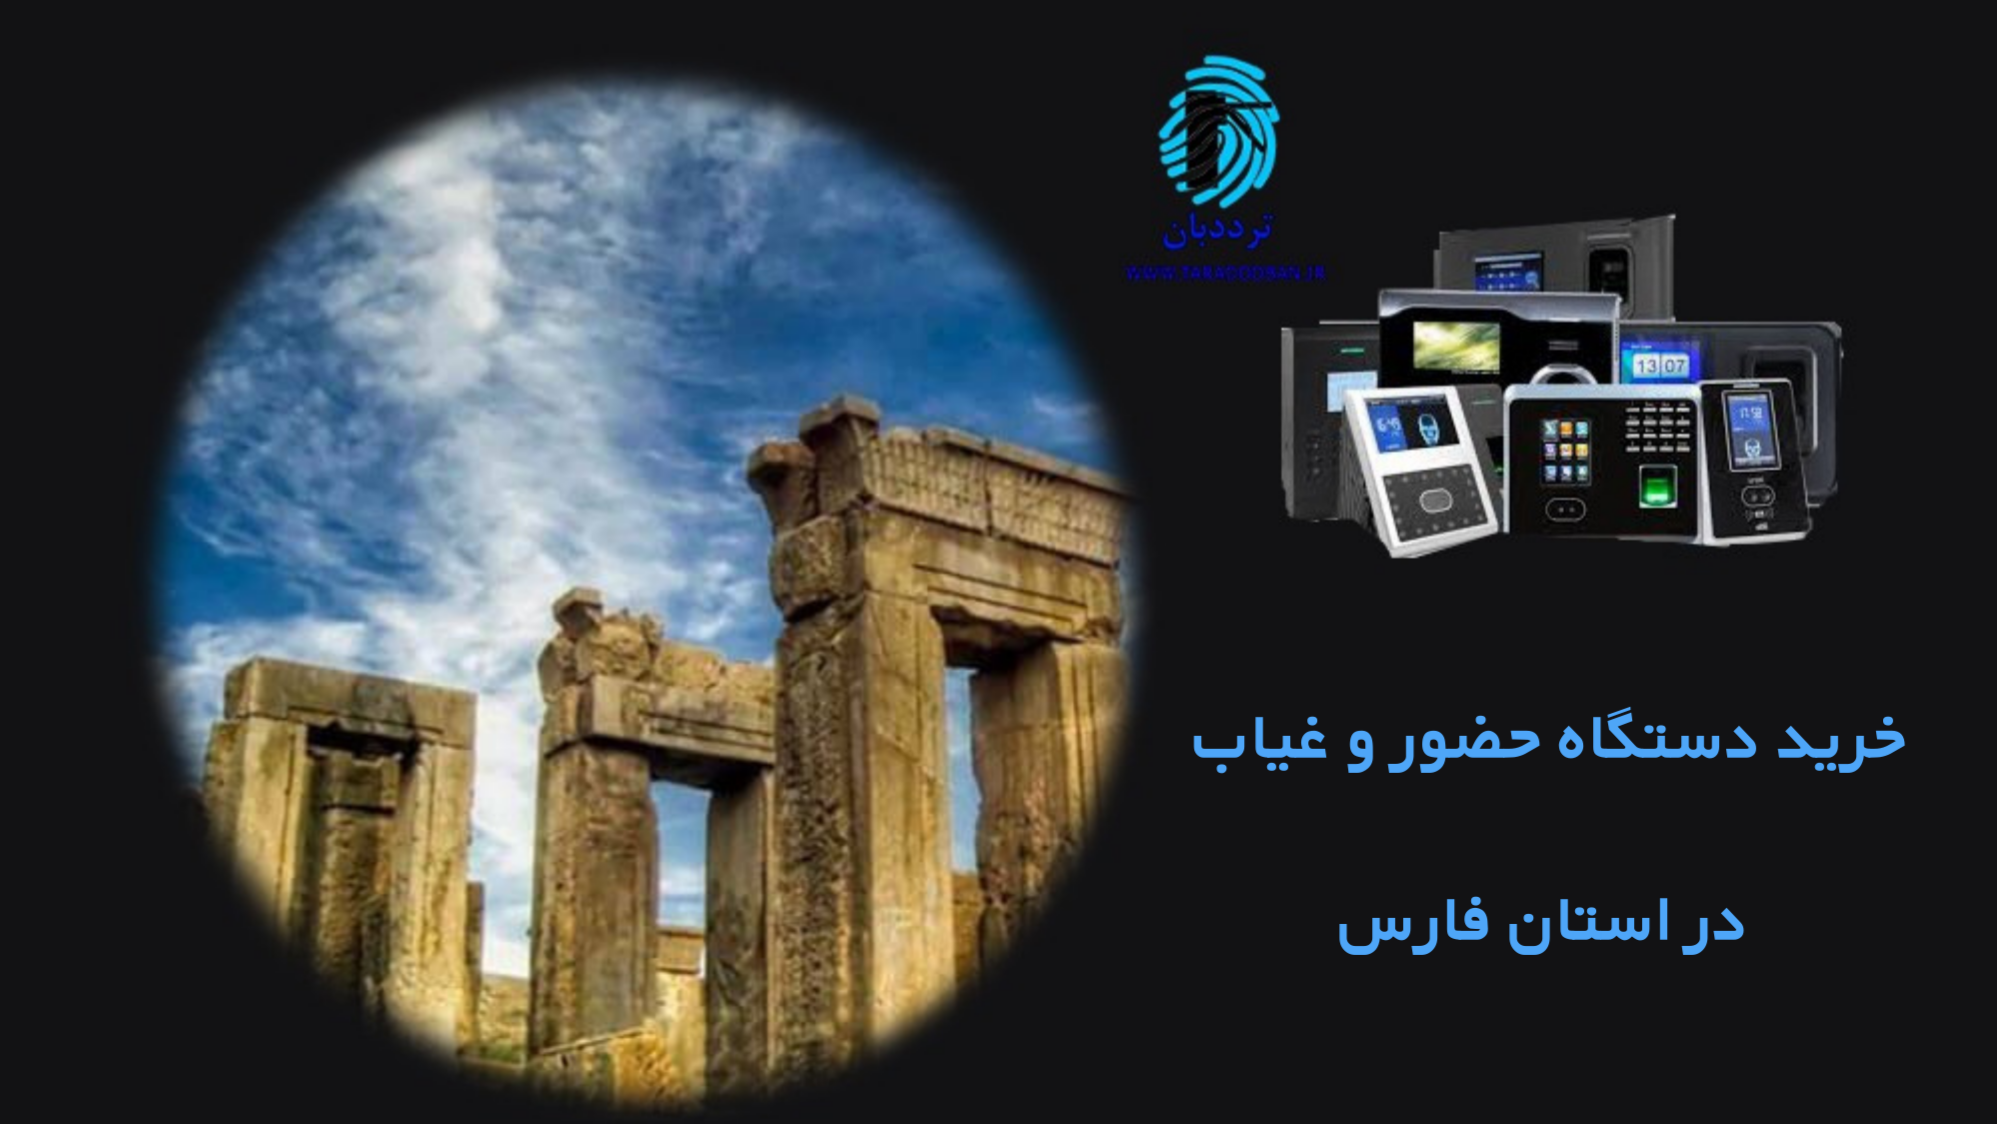 خرید دستگاه حضورغیاب شیراز